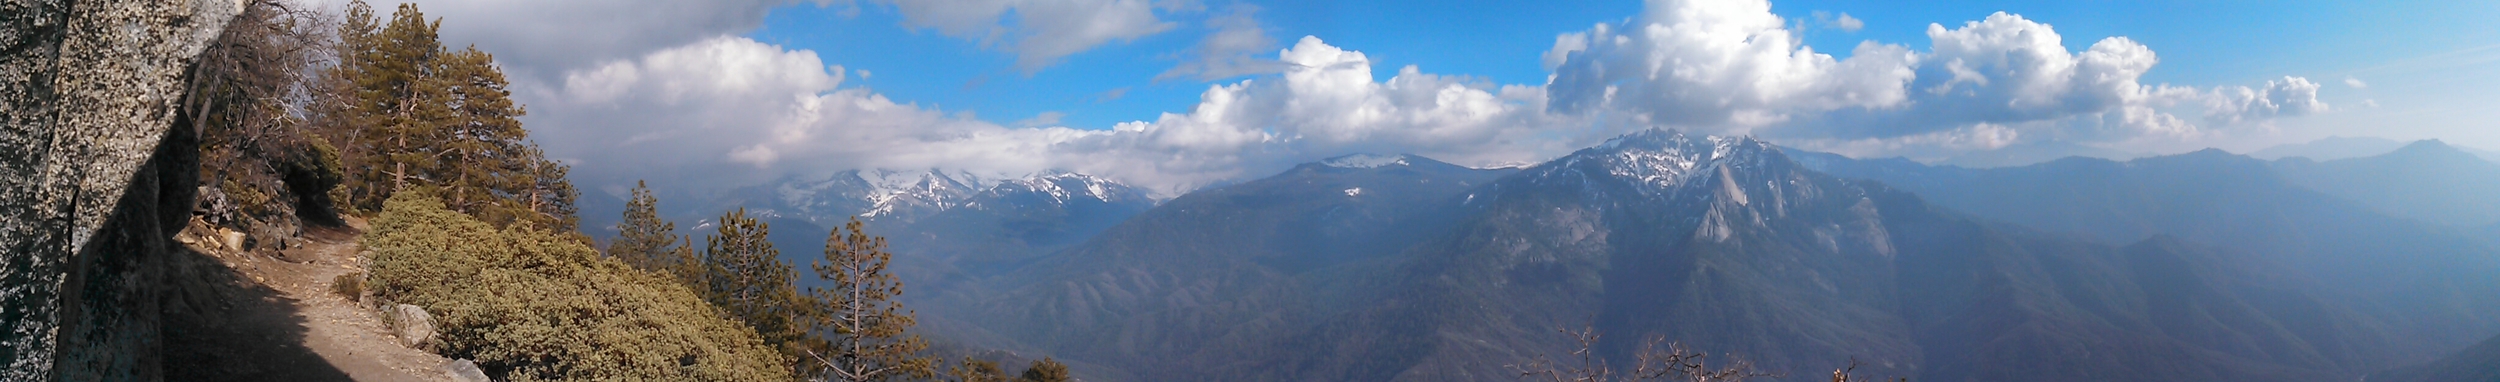 High Sierra Trail3.jpg